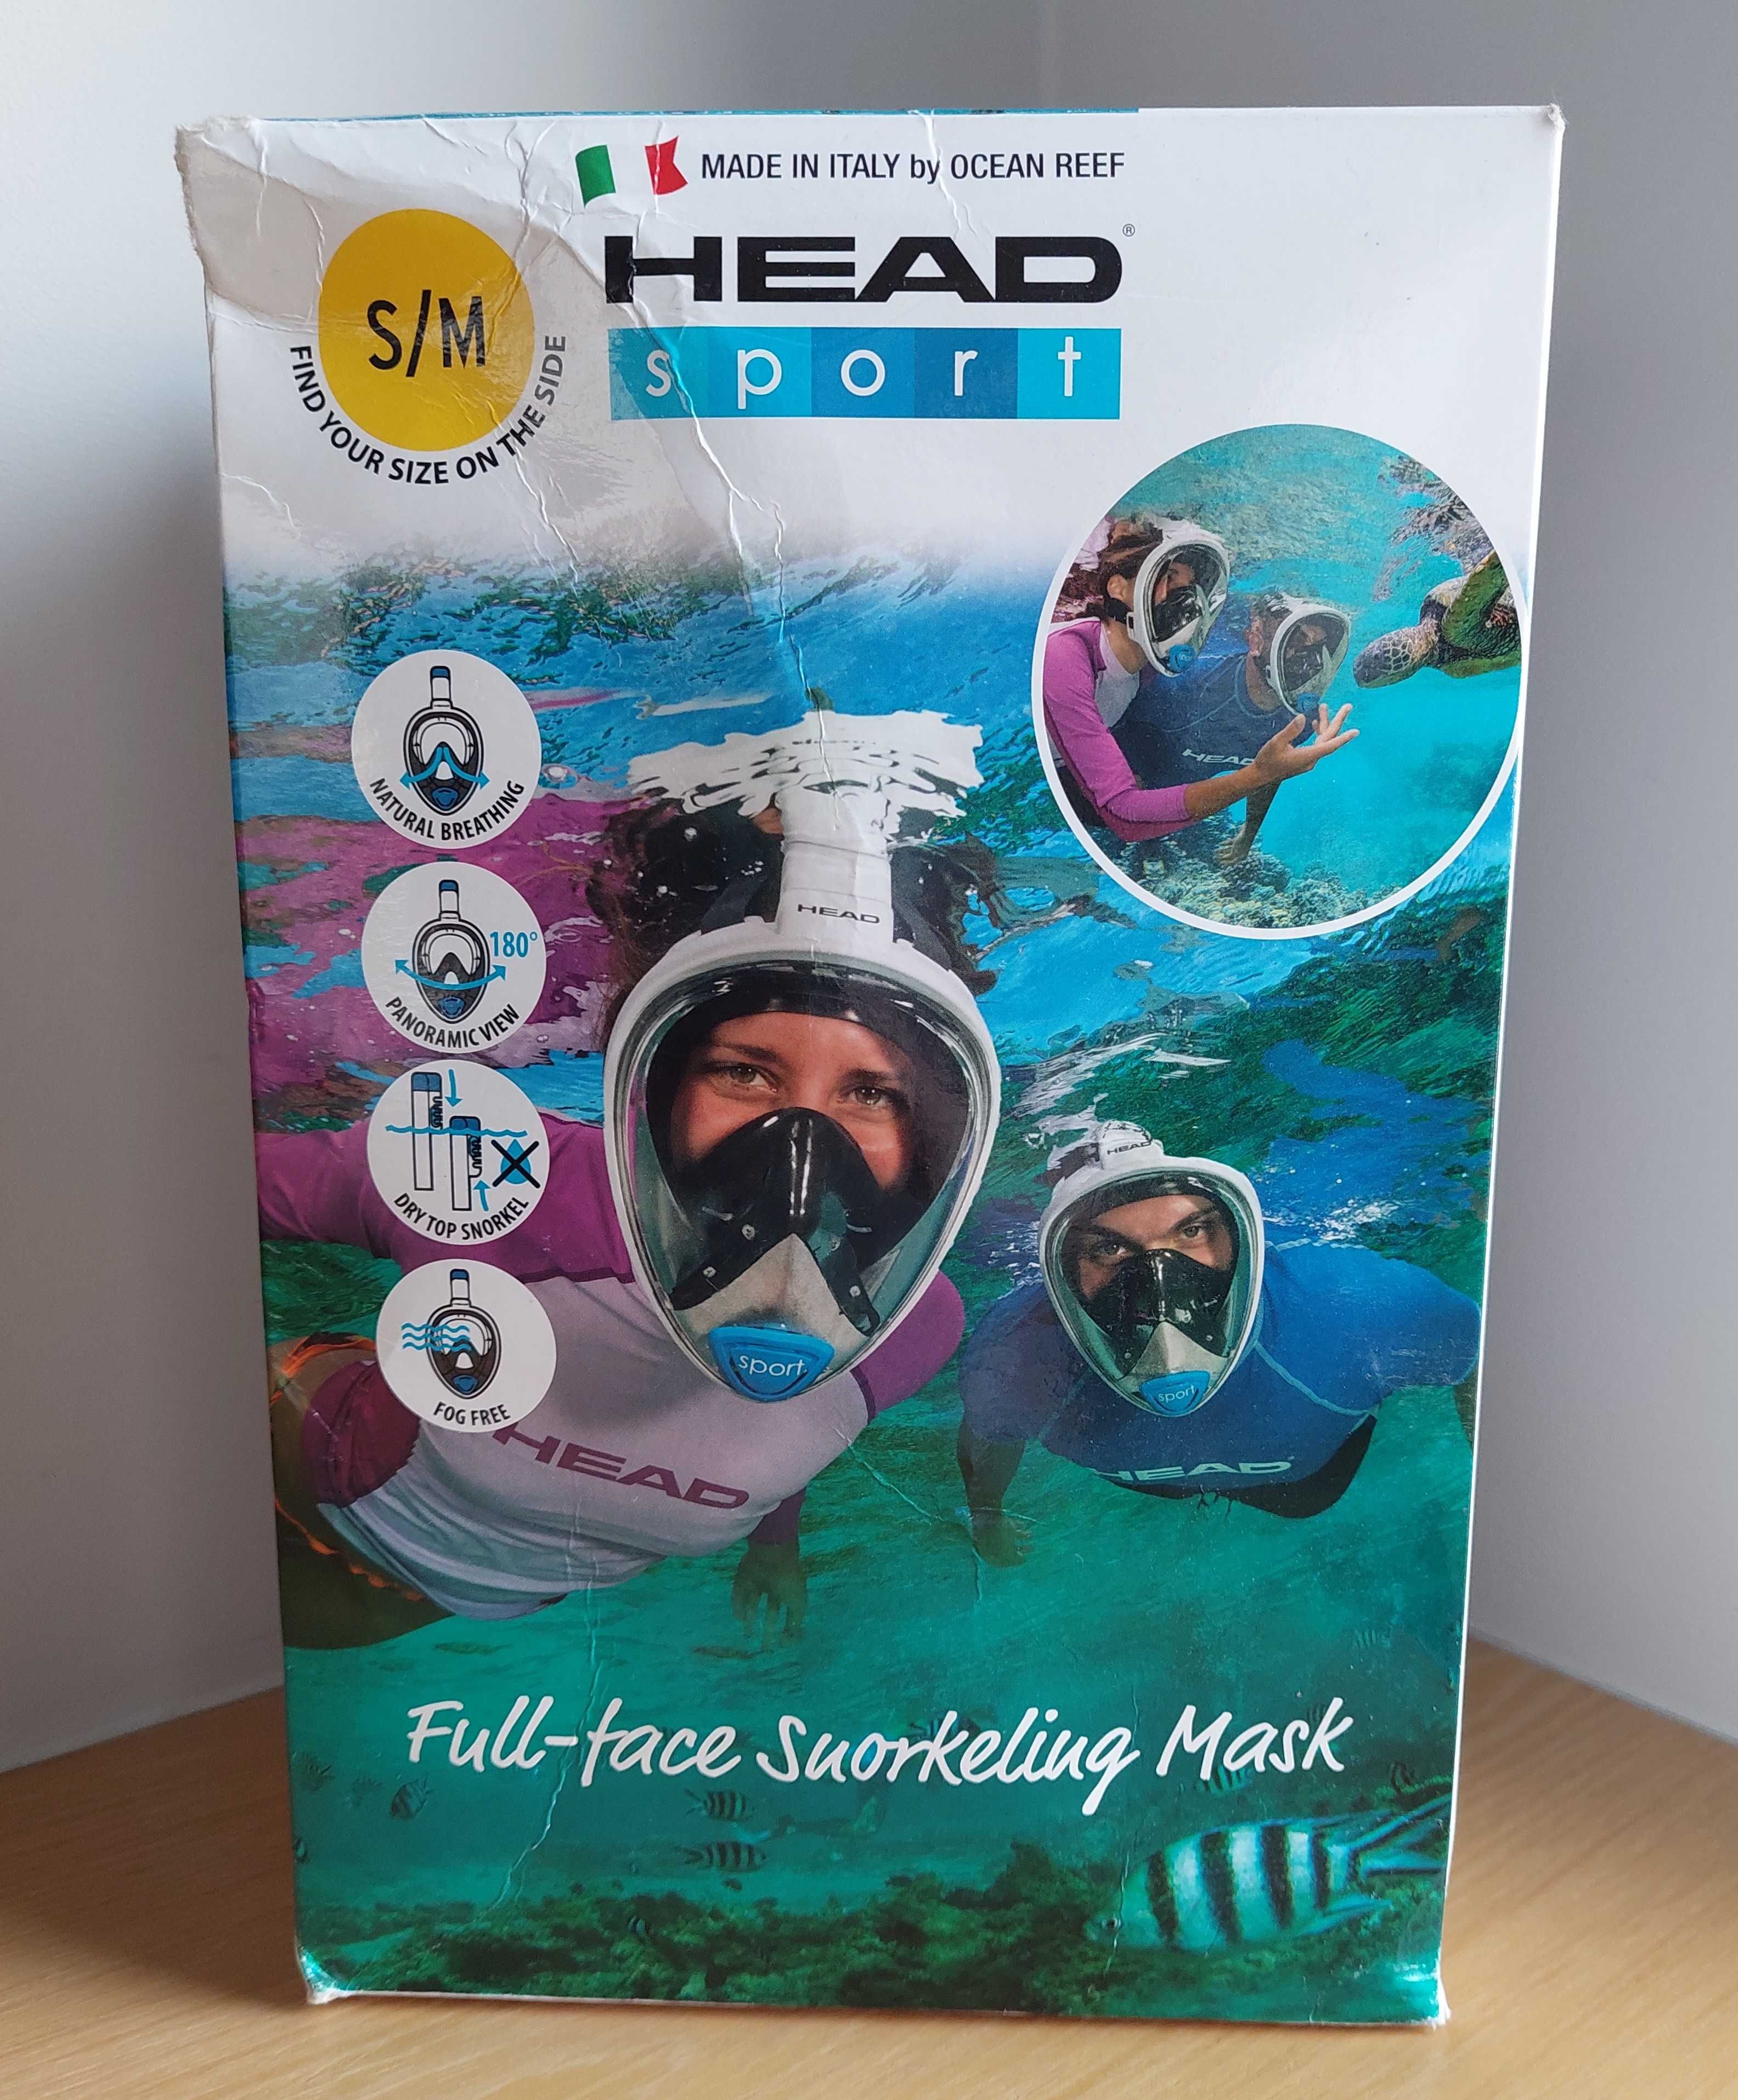 Maska do snorkelingu pełnotwarzowa Ocean Reef Head Sport rozm. S/M